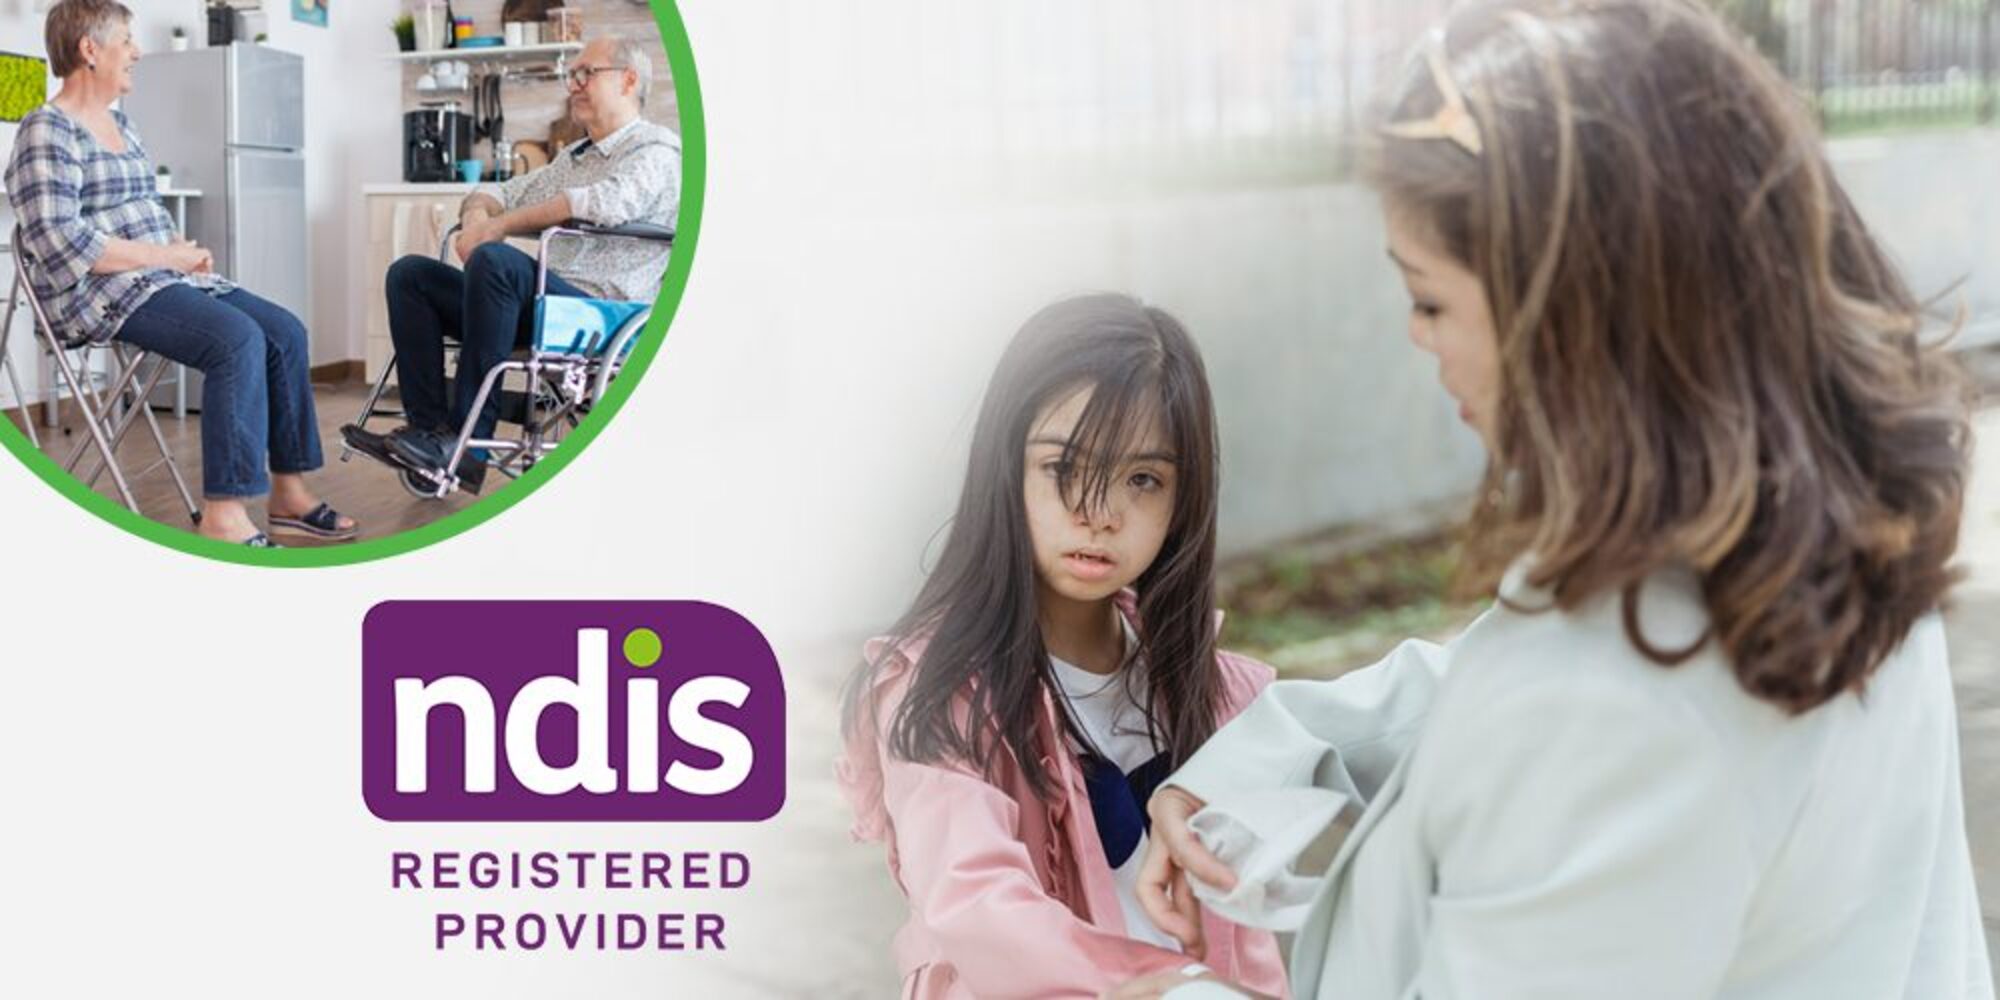 ndis service provider